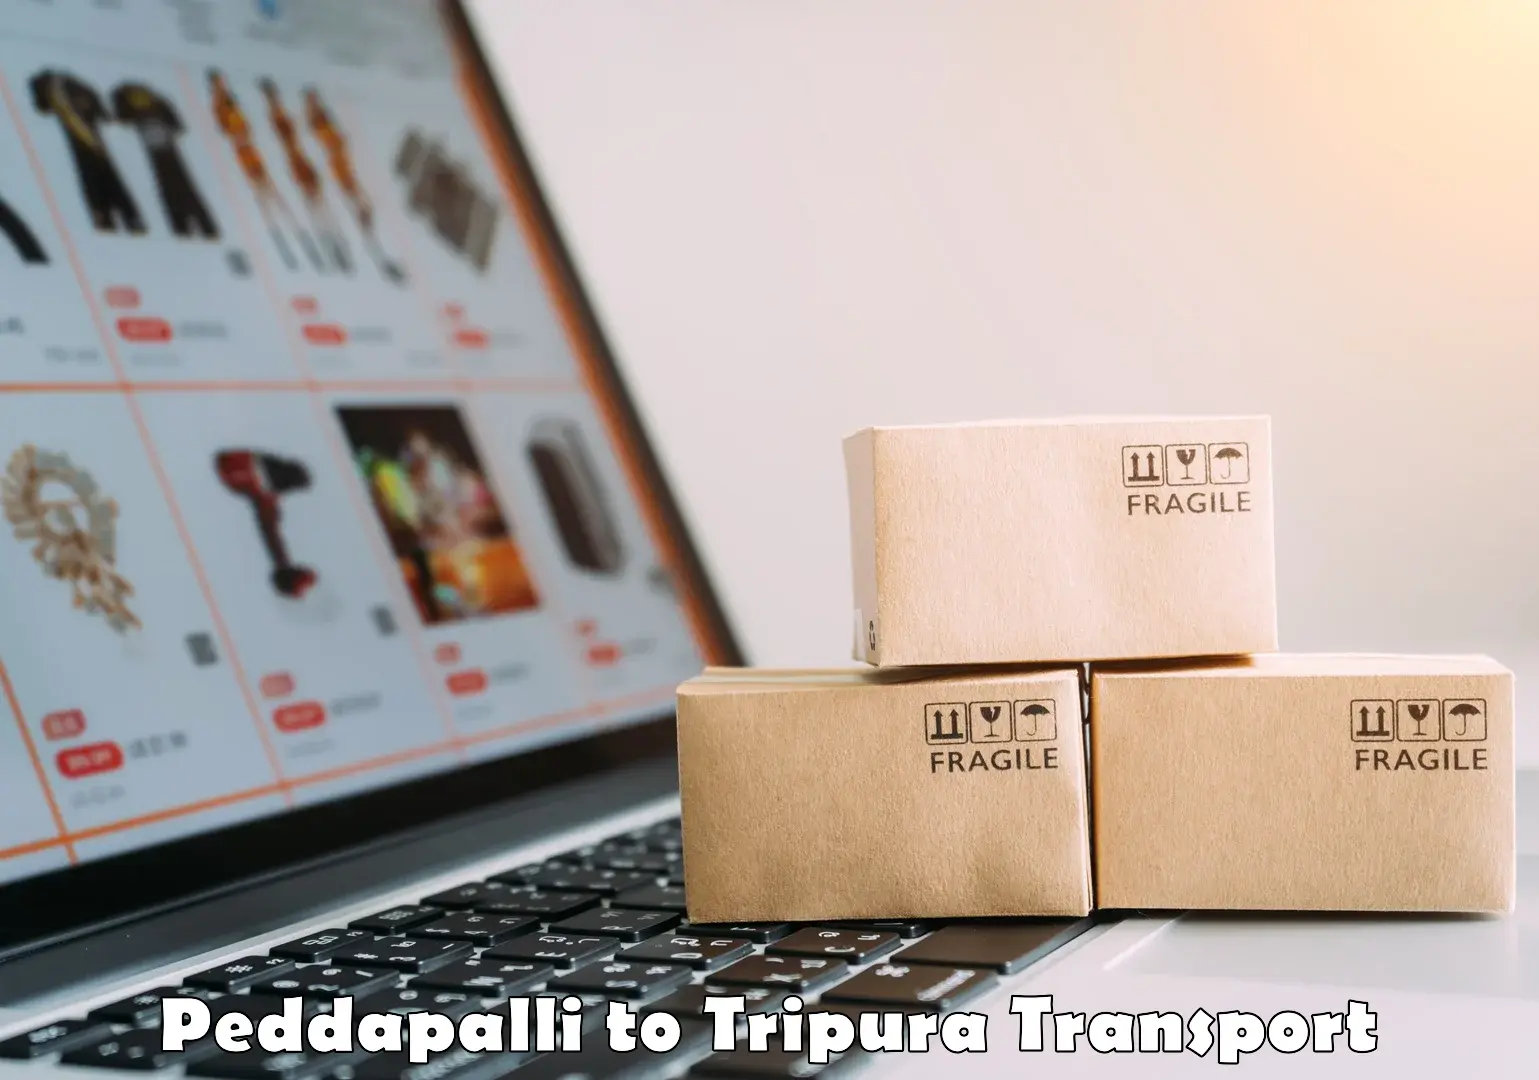 Nearest transport service Peddapalli to IIIT Agartala